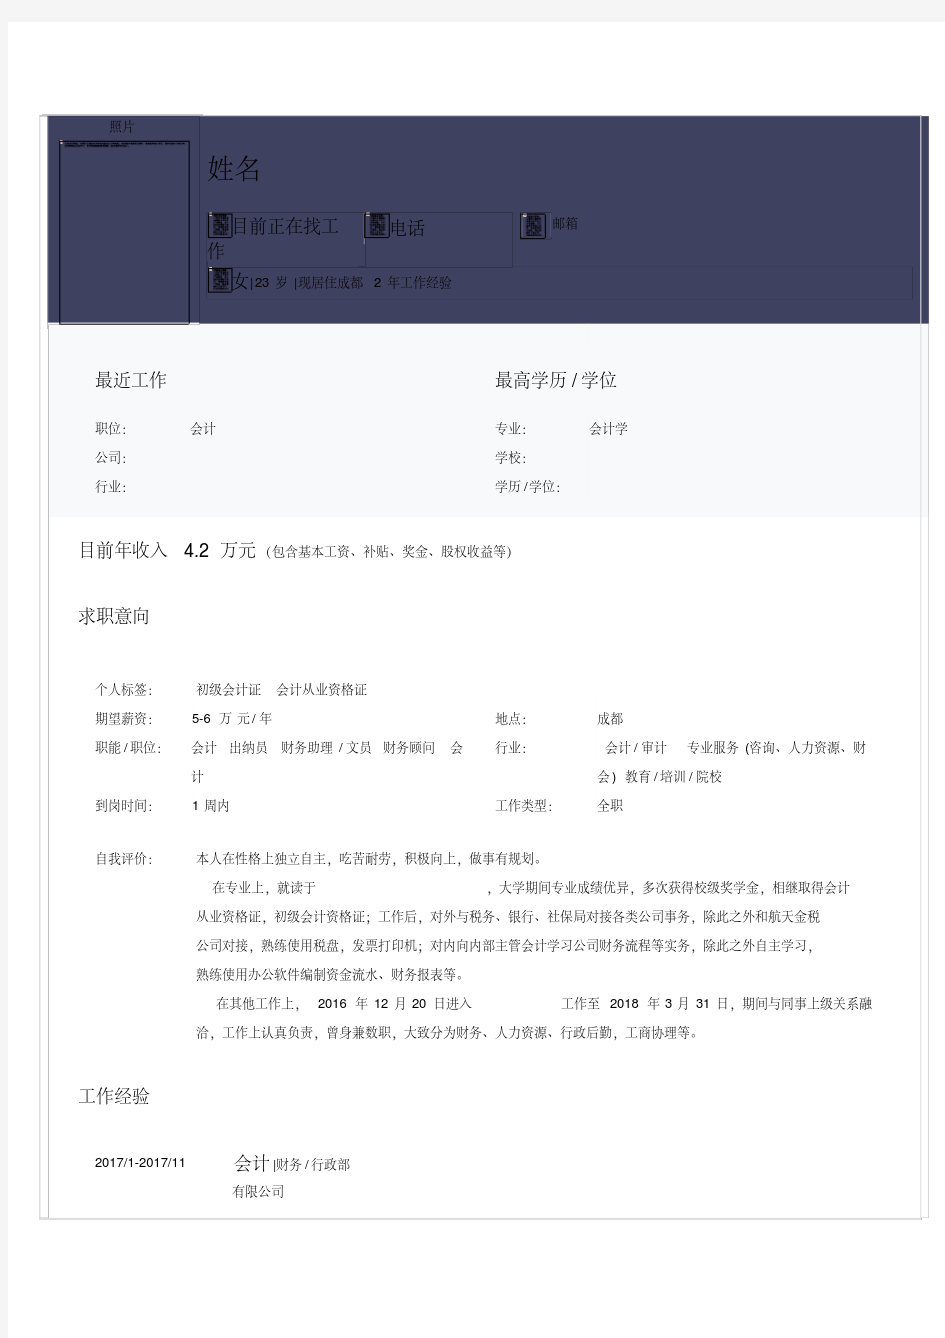 会计简历模板-新版.pdf